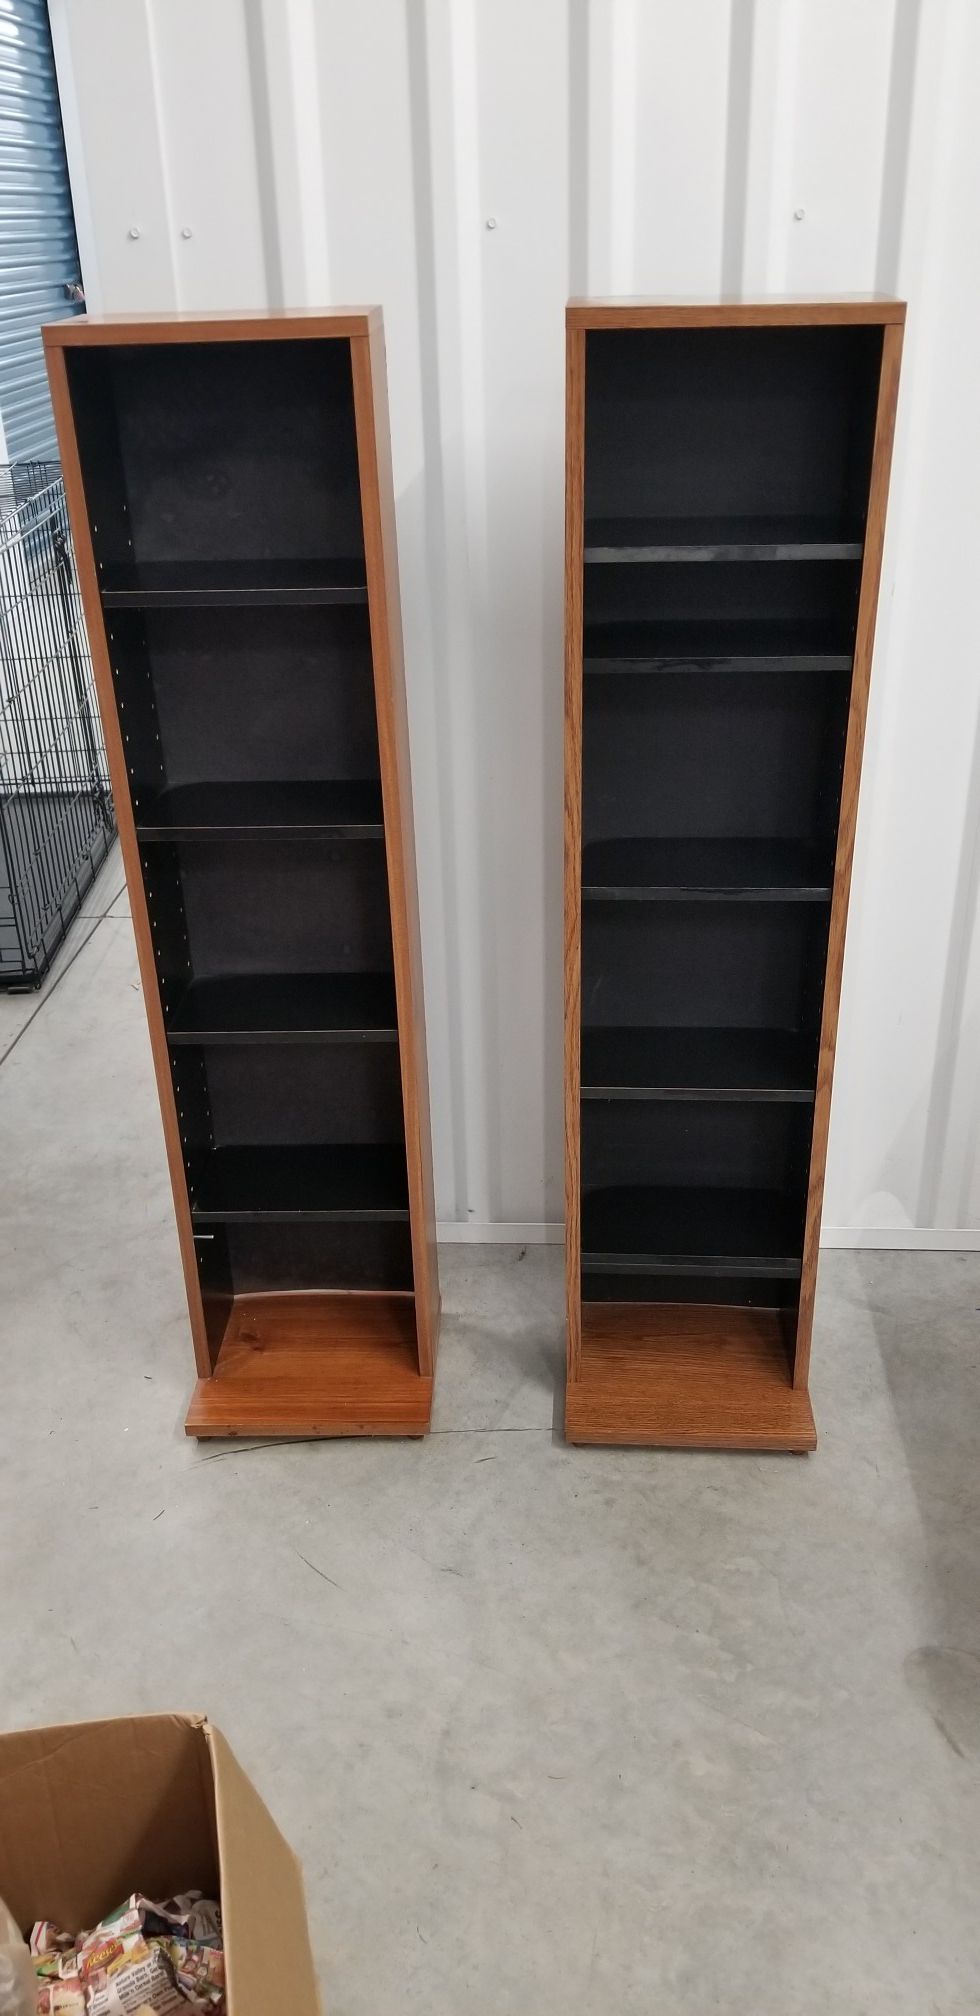 Adjustable Bookshelves